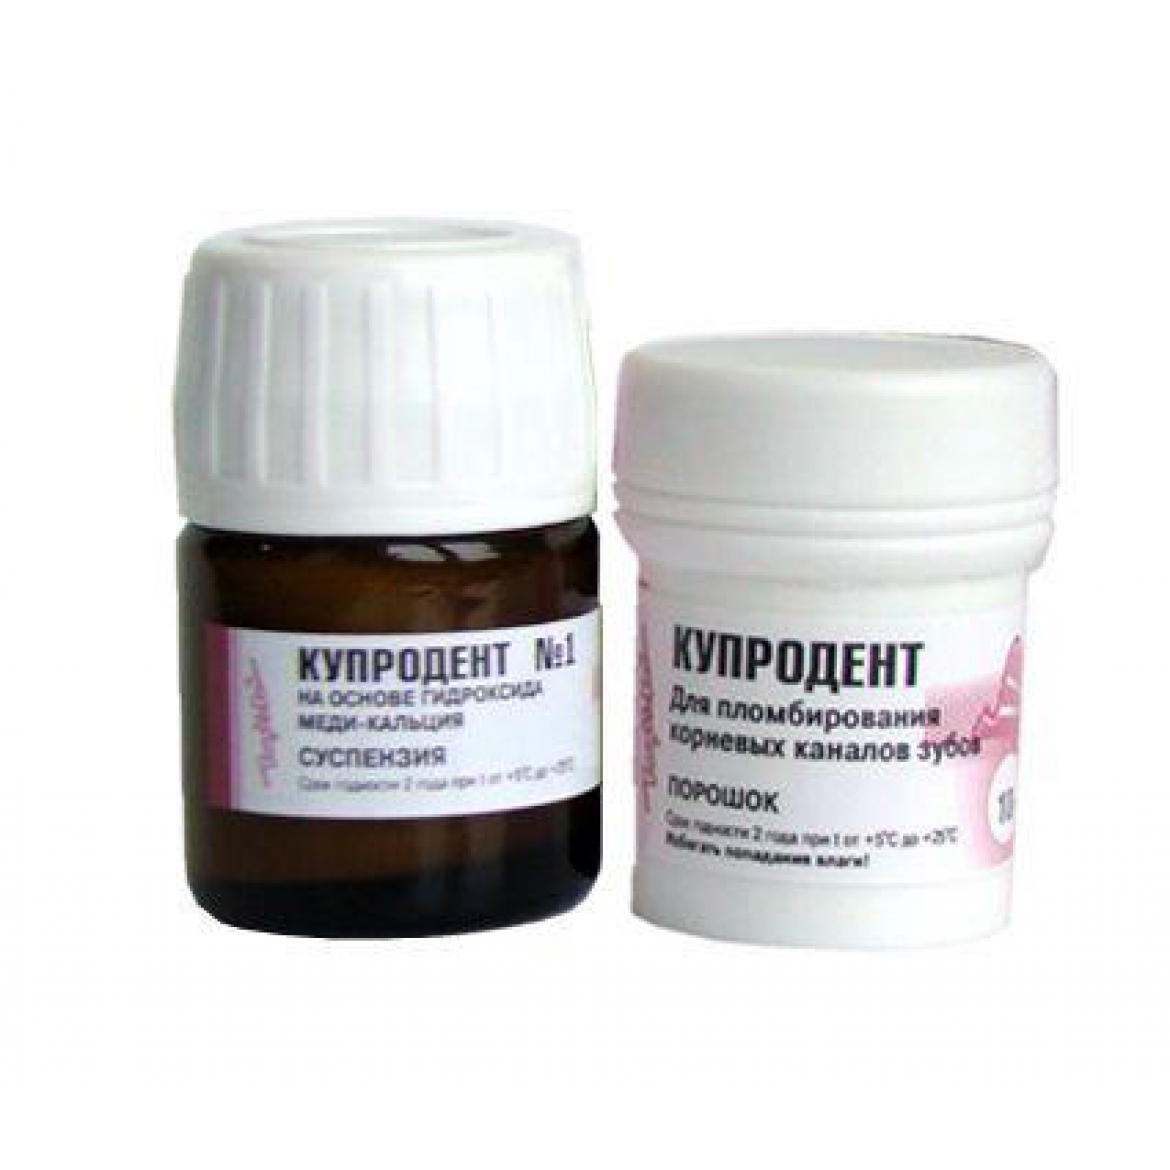 Купродент жидкость суспензия№1 гидроксид меди-кальция (20г)